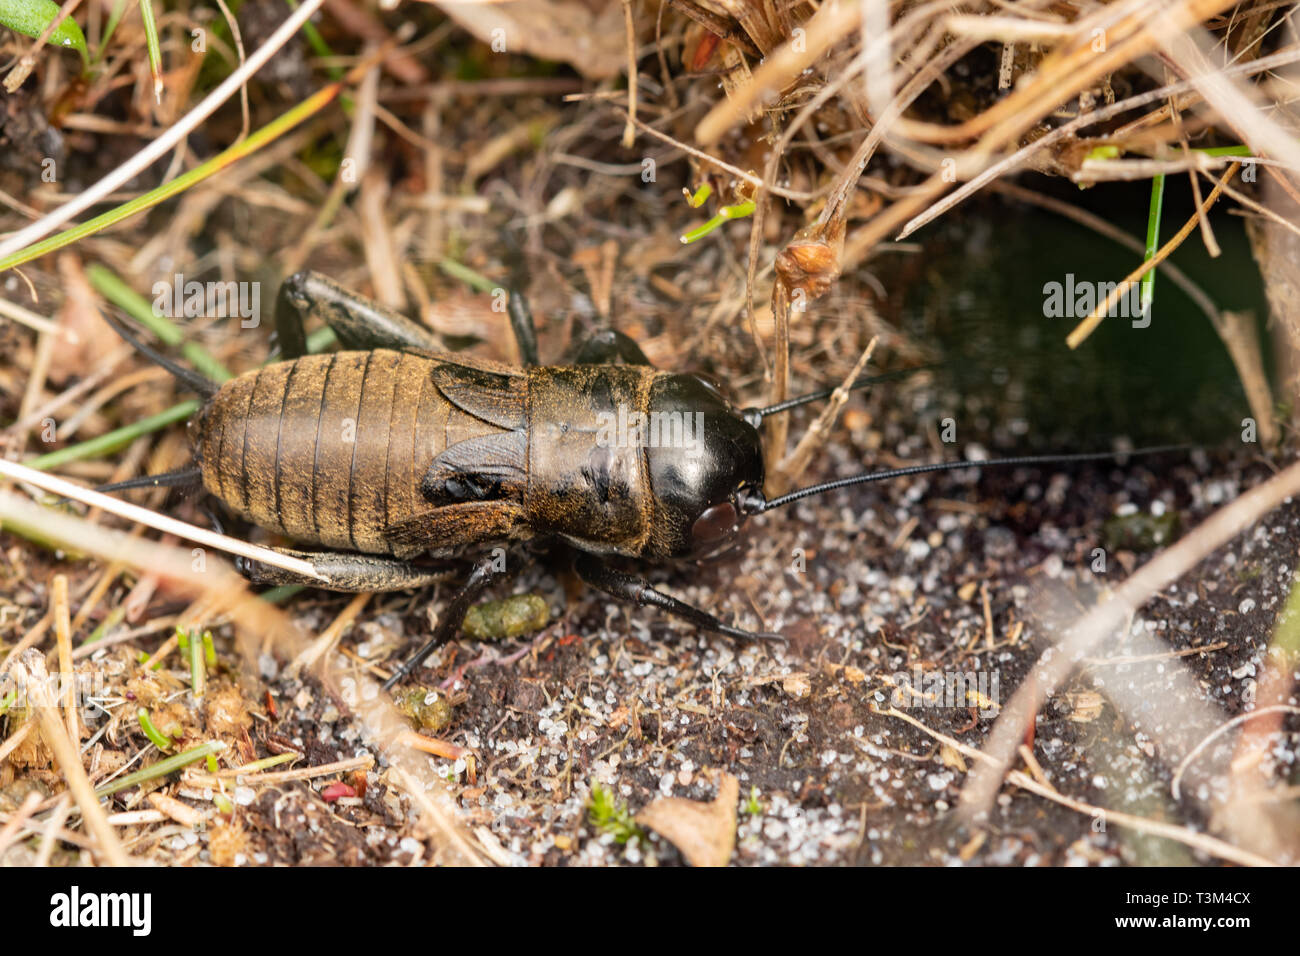 Grillo de campo (Gryllus campestris) ninfa, una rara especie en peligro de extinción de insectos incapaces de volar en el Reino Unido, West Sussex, Reino Unido, cerca de su madriguera Foto de stock